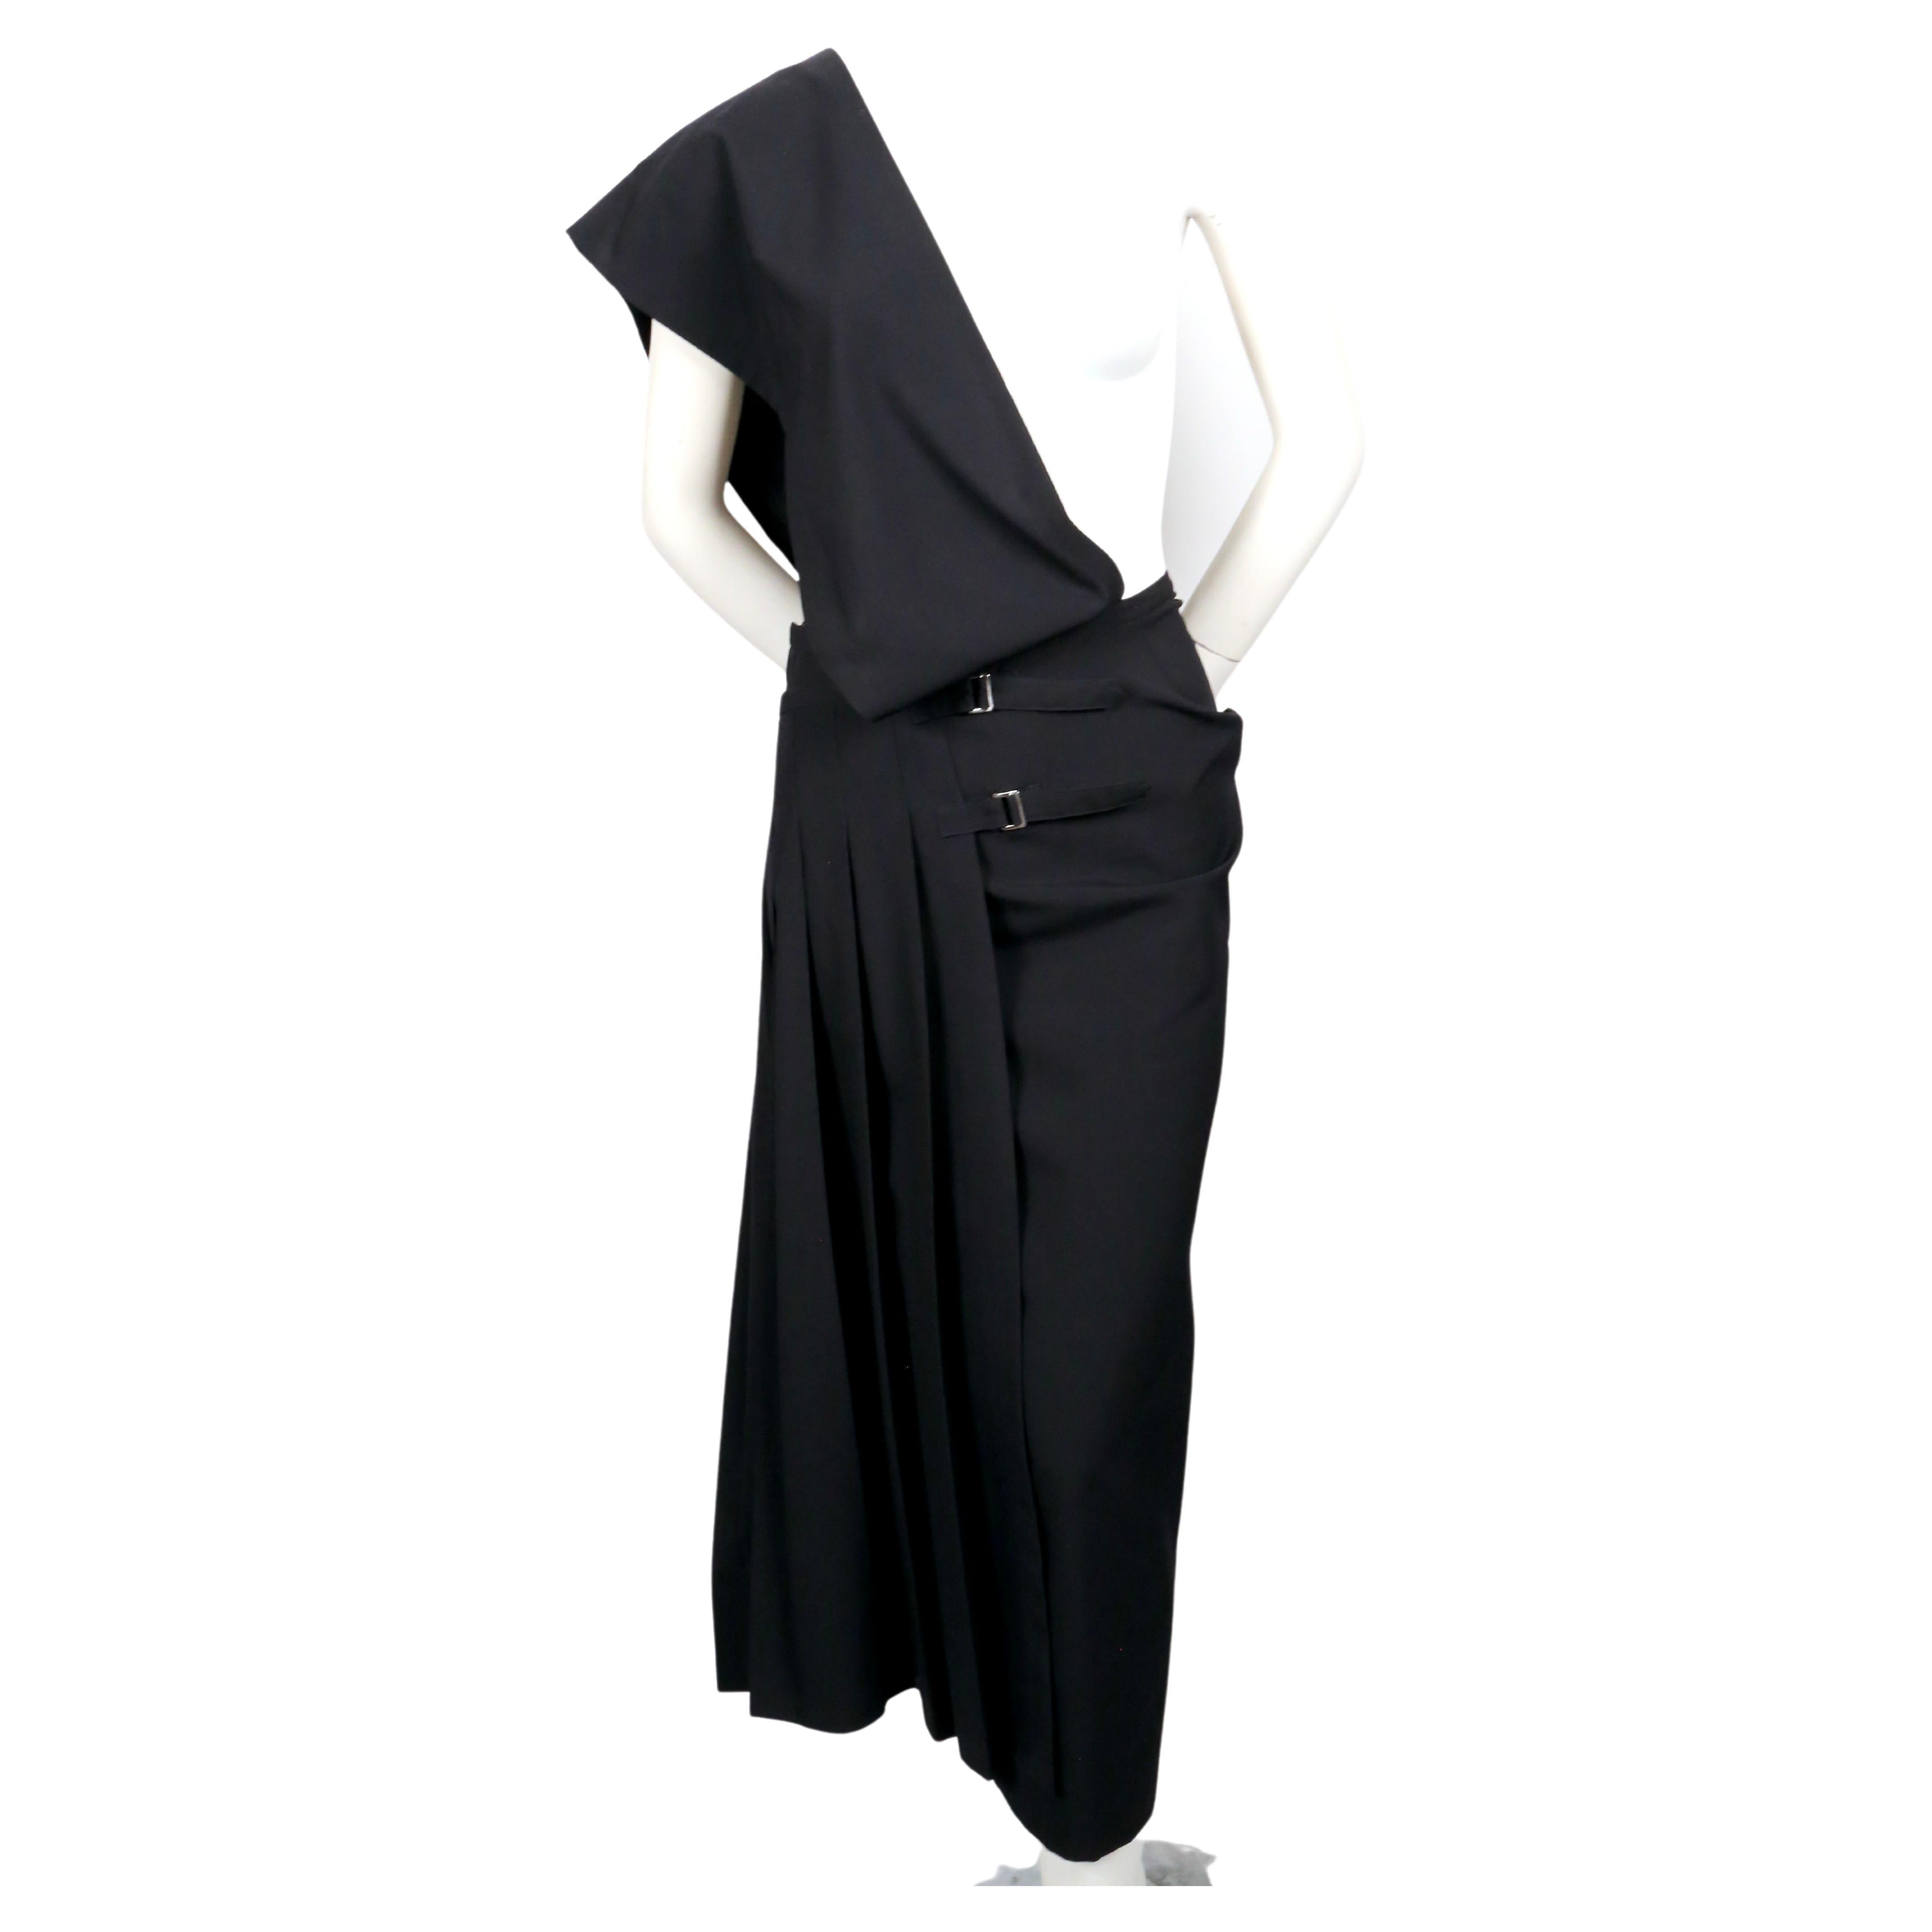 Schwarzes, asymmetrisches Kleid mit einer Schulter und Faltenrock, entworfen von Rei Kawakubo für Comme Des Garcons aus dem Jahr 1989. Größe 'M'. Ungefähres Maß an der Innenseite der Taille 28